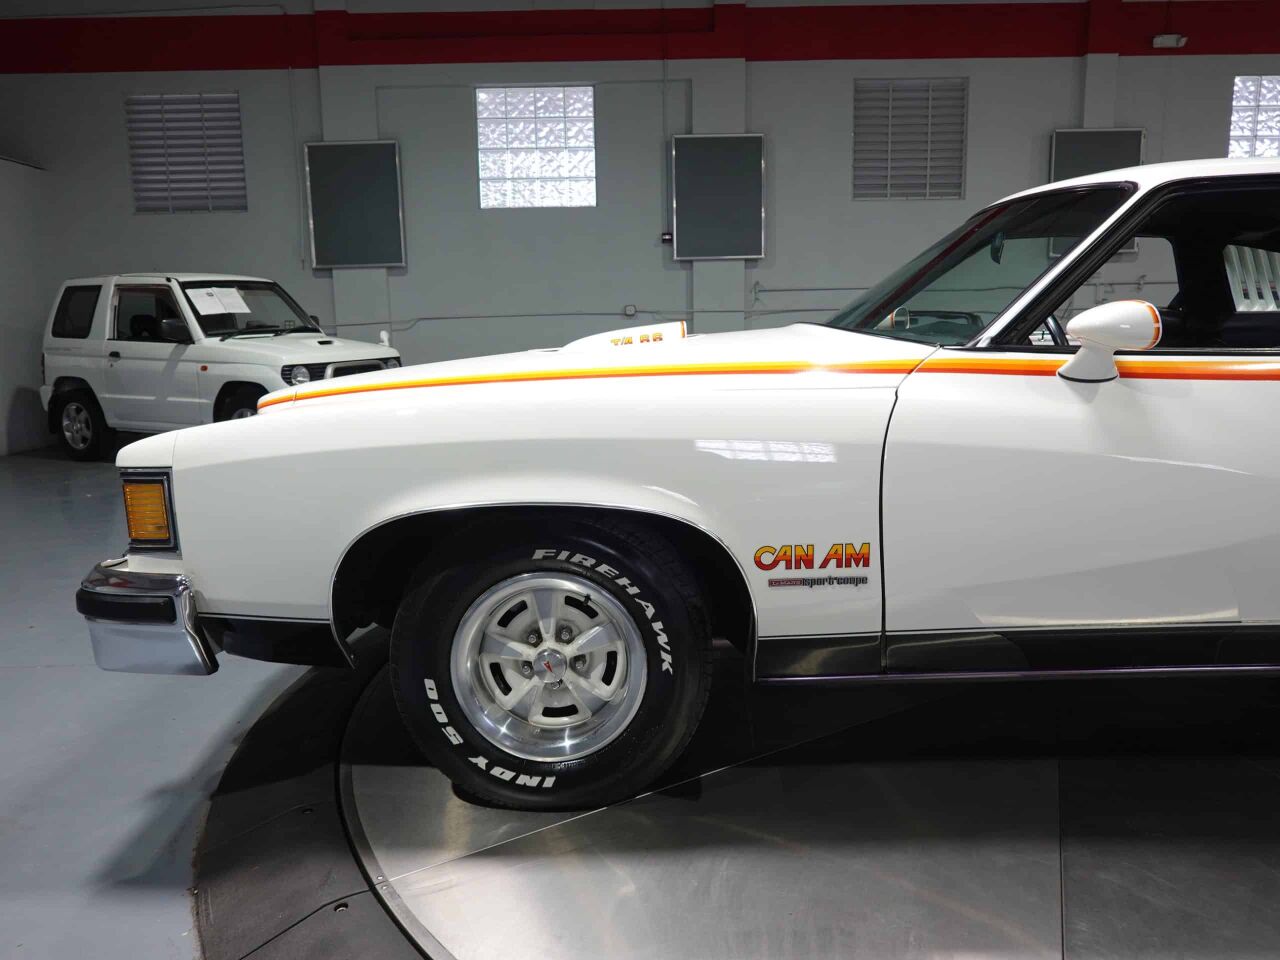 1977 Pontiac Can Am 16